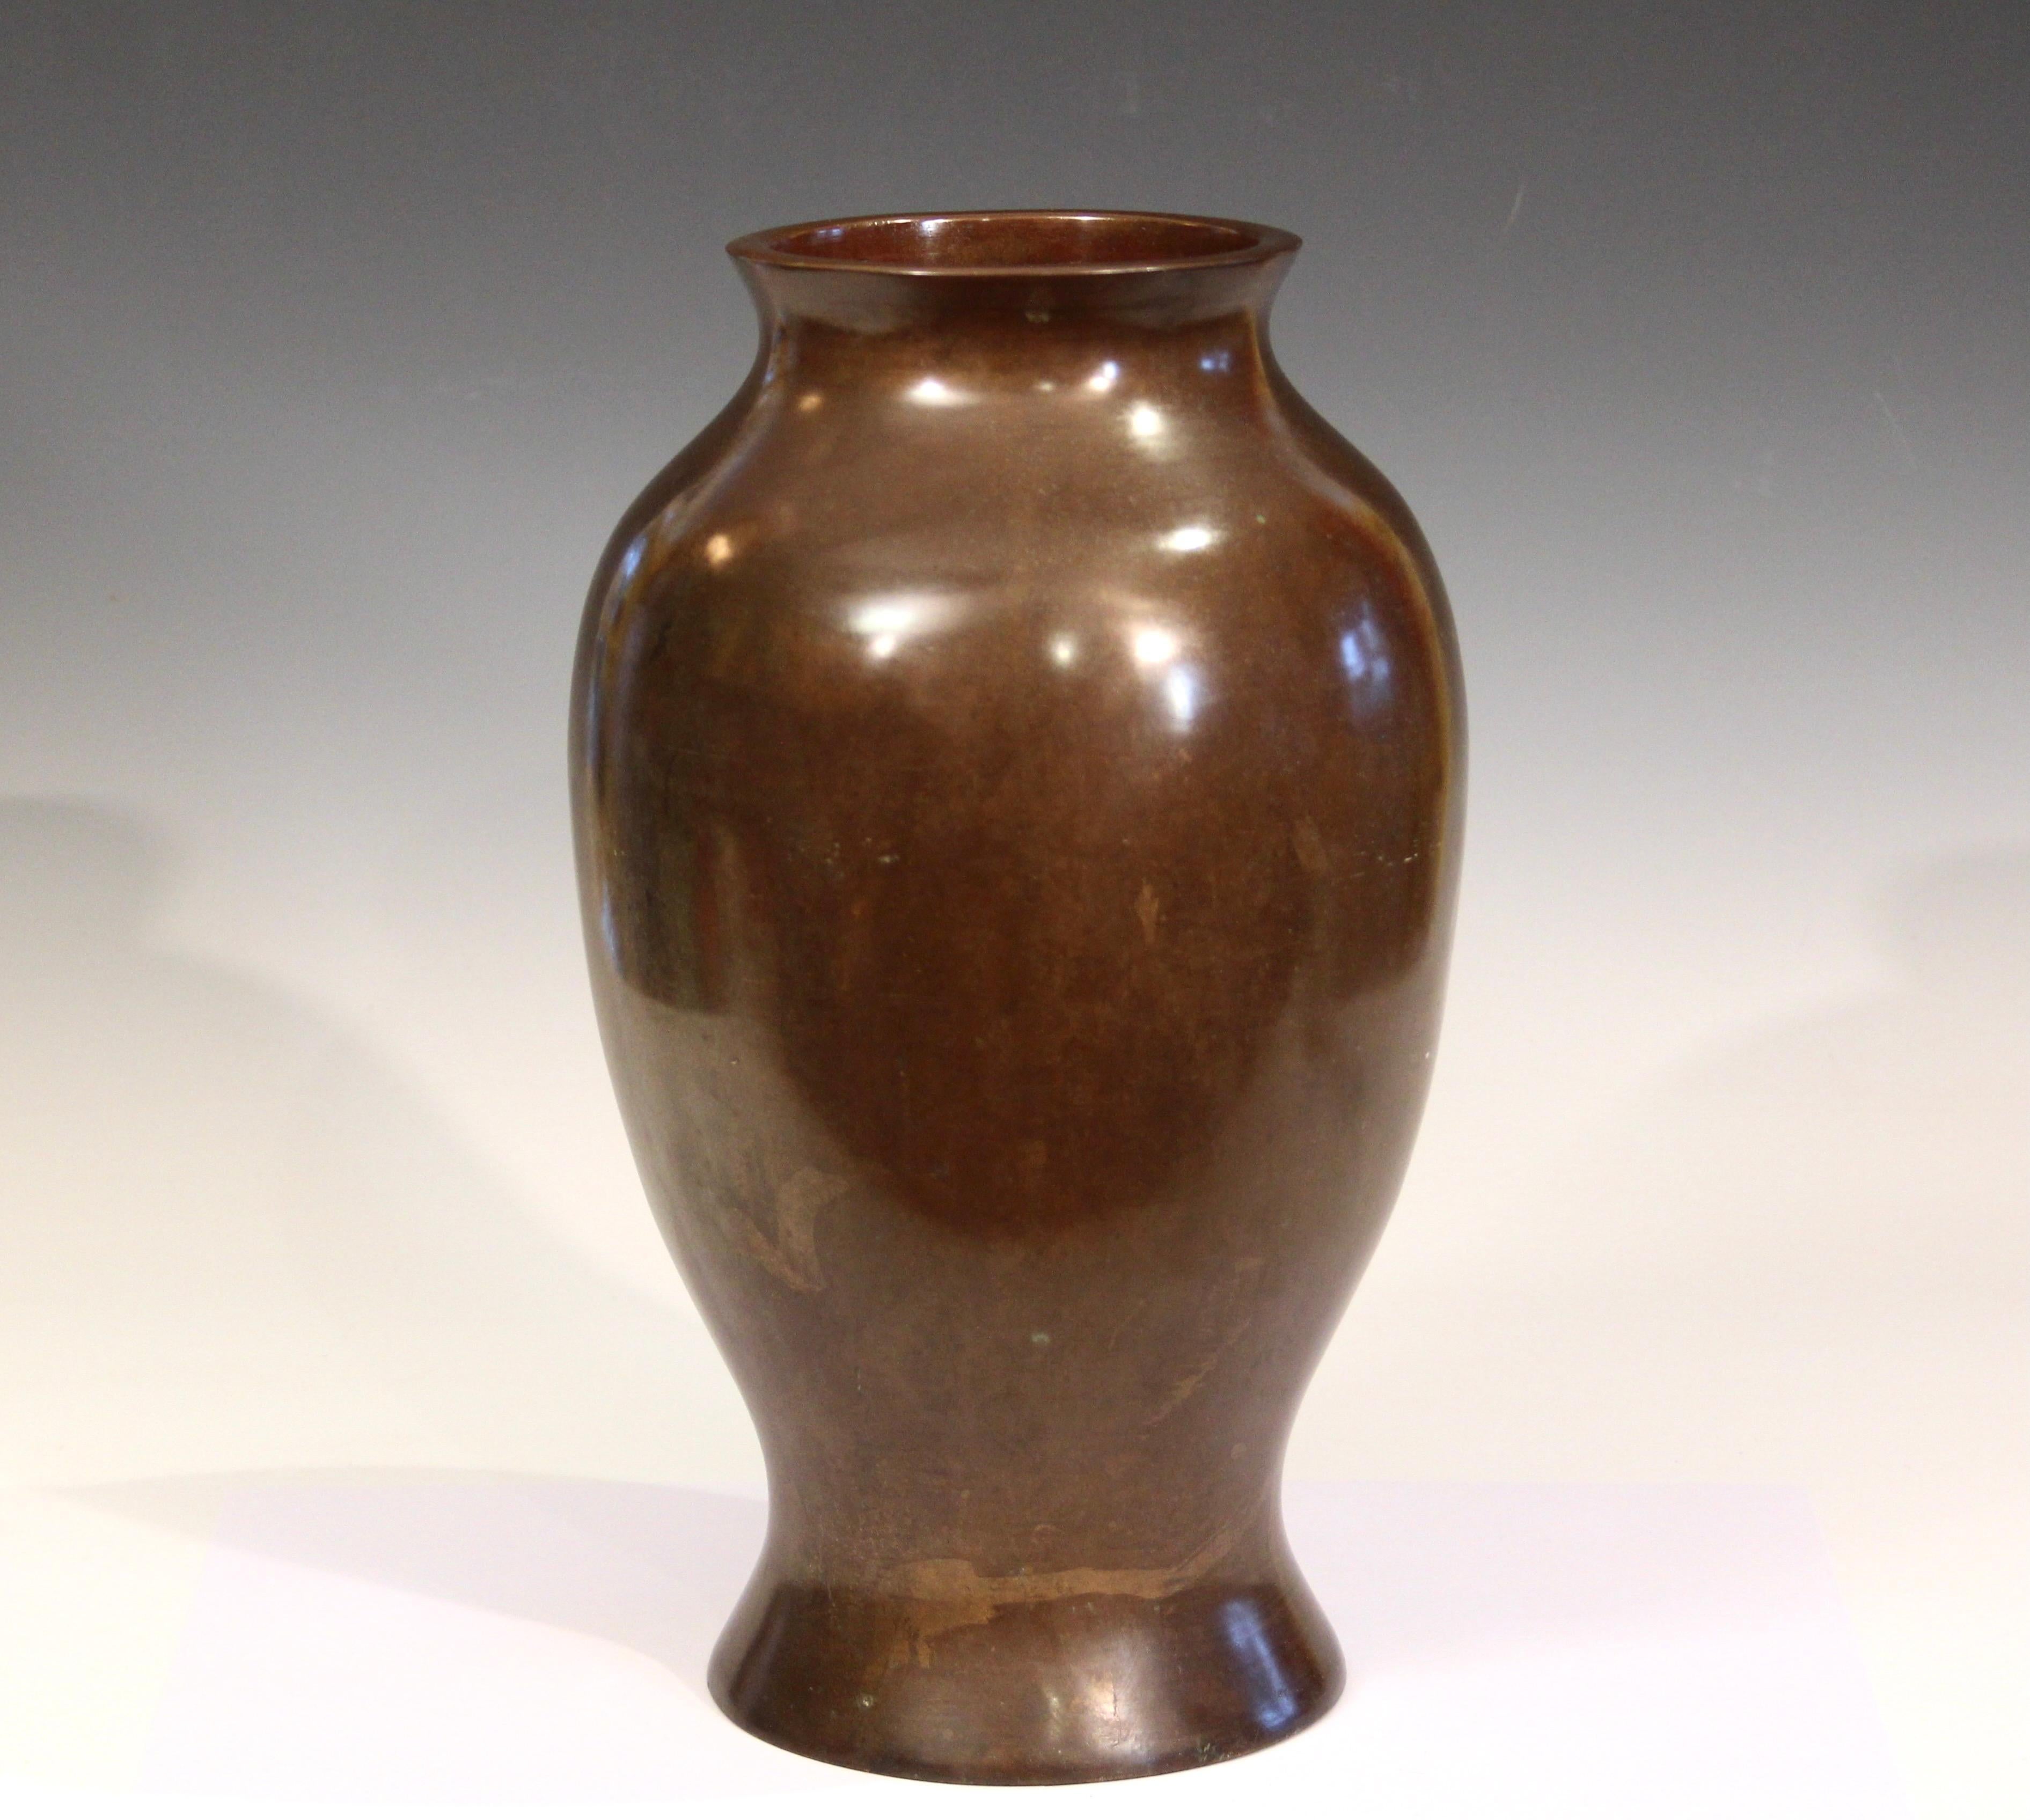 Turned Old Bronze Vase Japanese Antique Patinated Large Vessel Verdigris 14